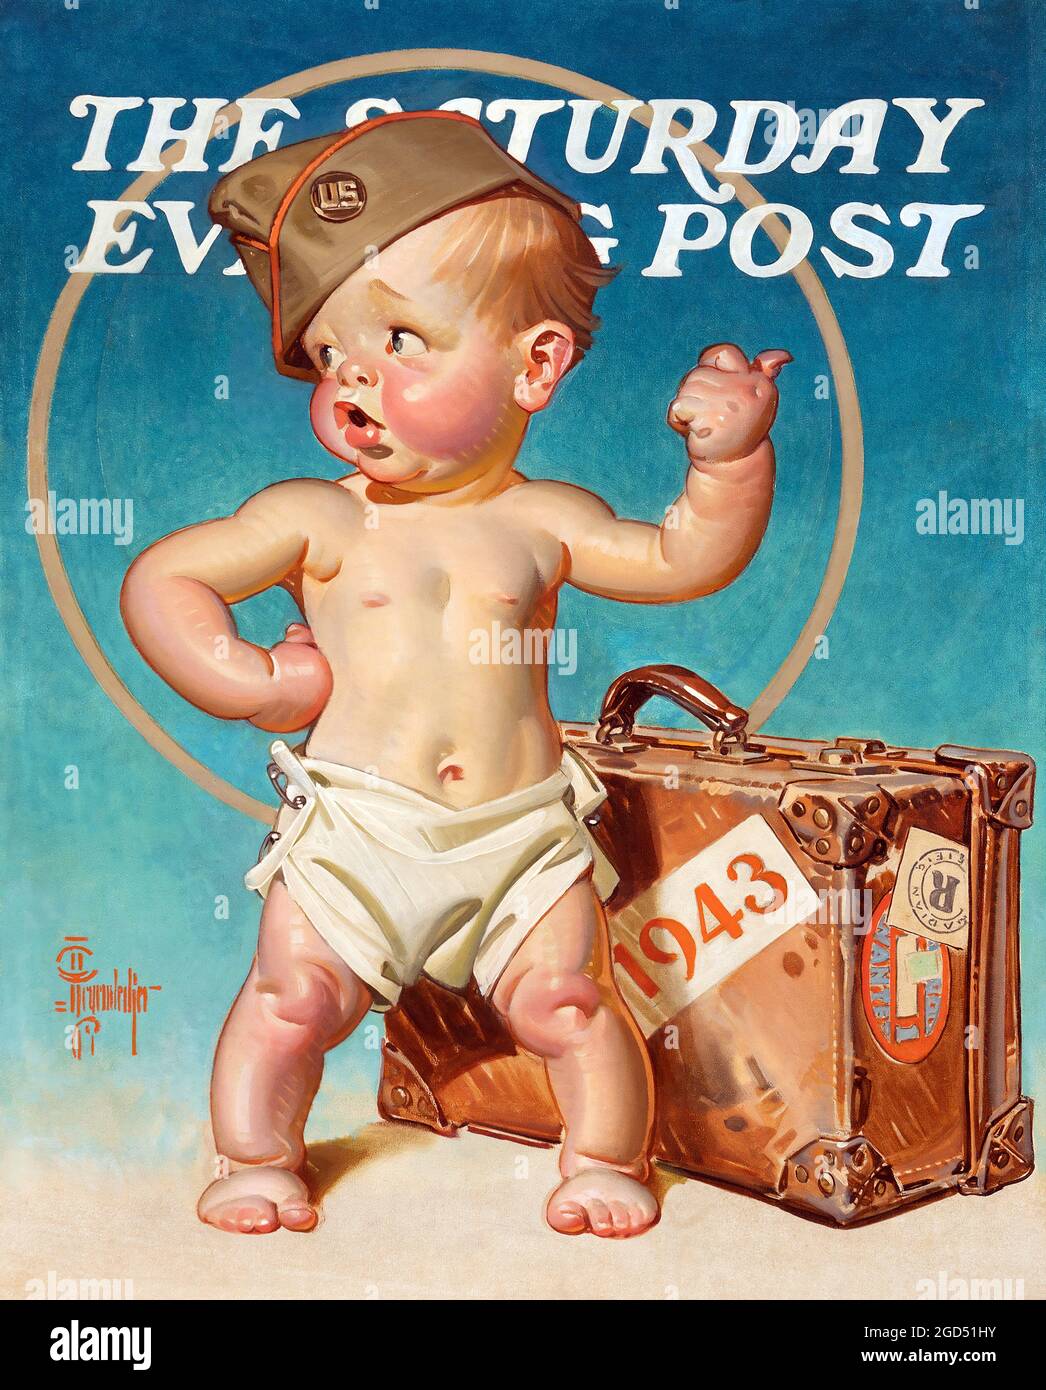 Das Cover der Saturday Evening Post, 1943. Mit einem kleinen Soldaten. Joseph Christian Leyendecker Illustration, die nie in der Zeitschrift veröffentlicht wurde. Stockfoto